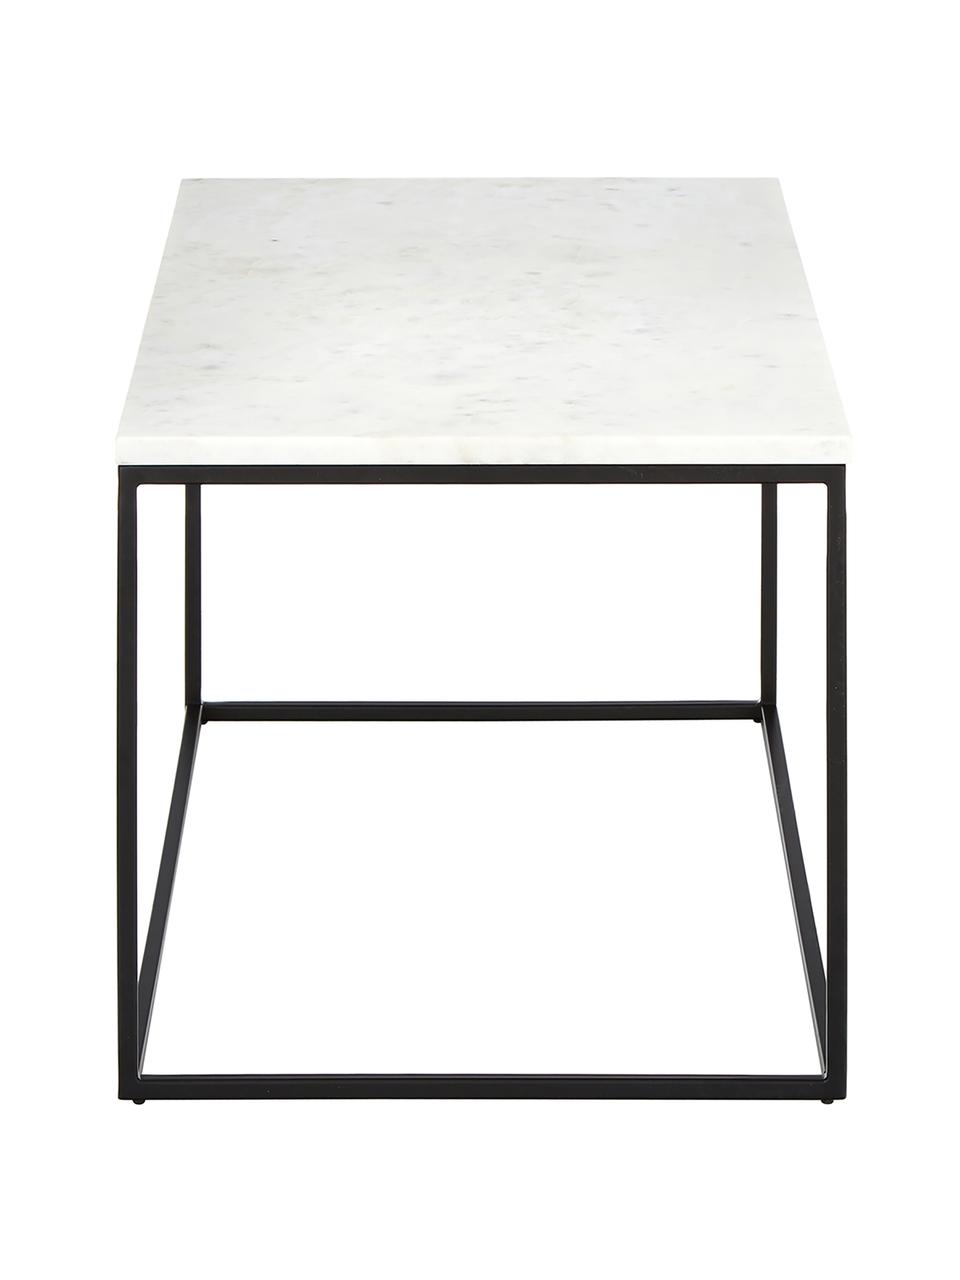 Marmor-Couchtisch Alys, Tischplatte: Marmor, Gestell: Metall, pulverbeschichtet, Weiss, marmoriert, Schwarz, B 80 x T 45 cm